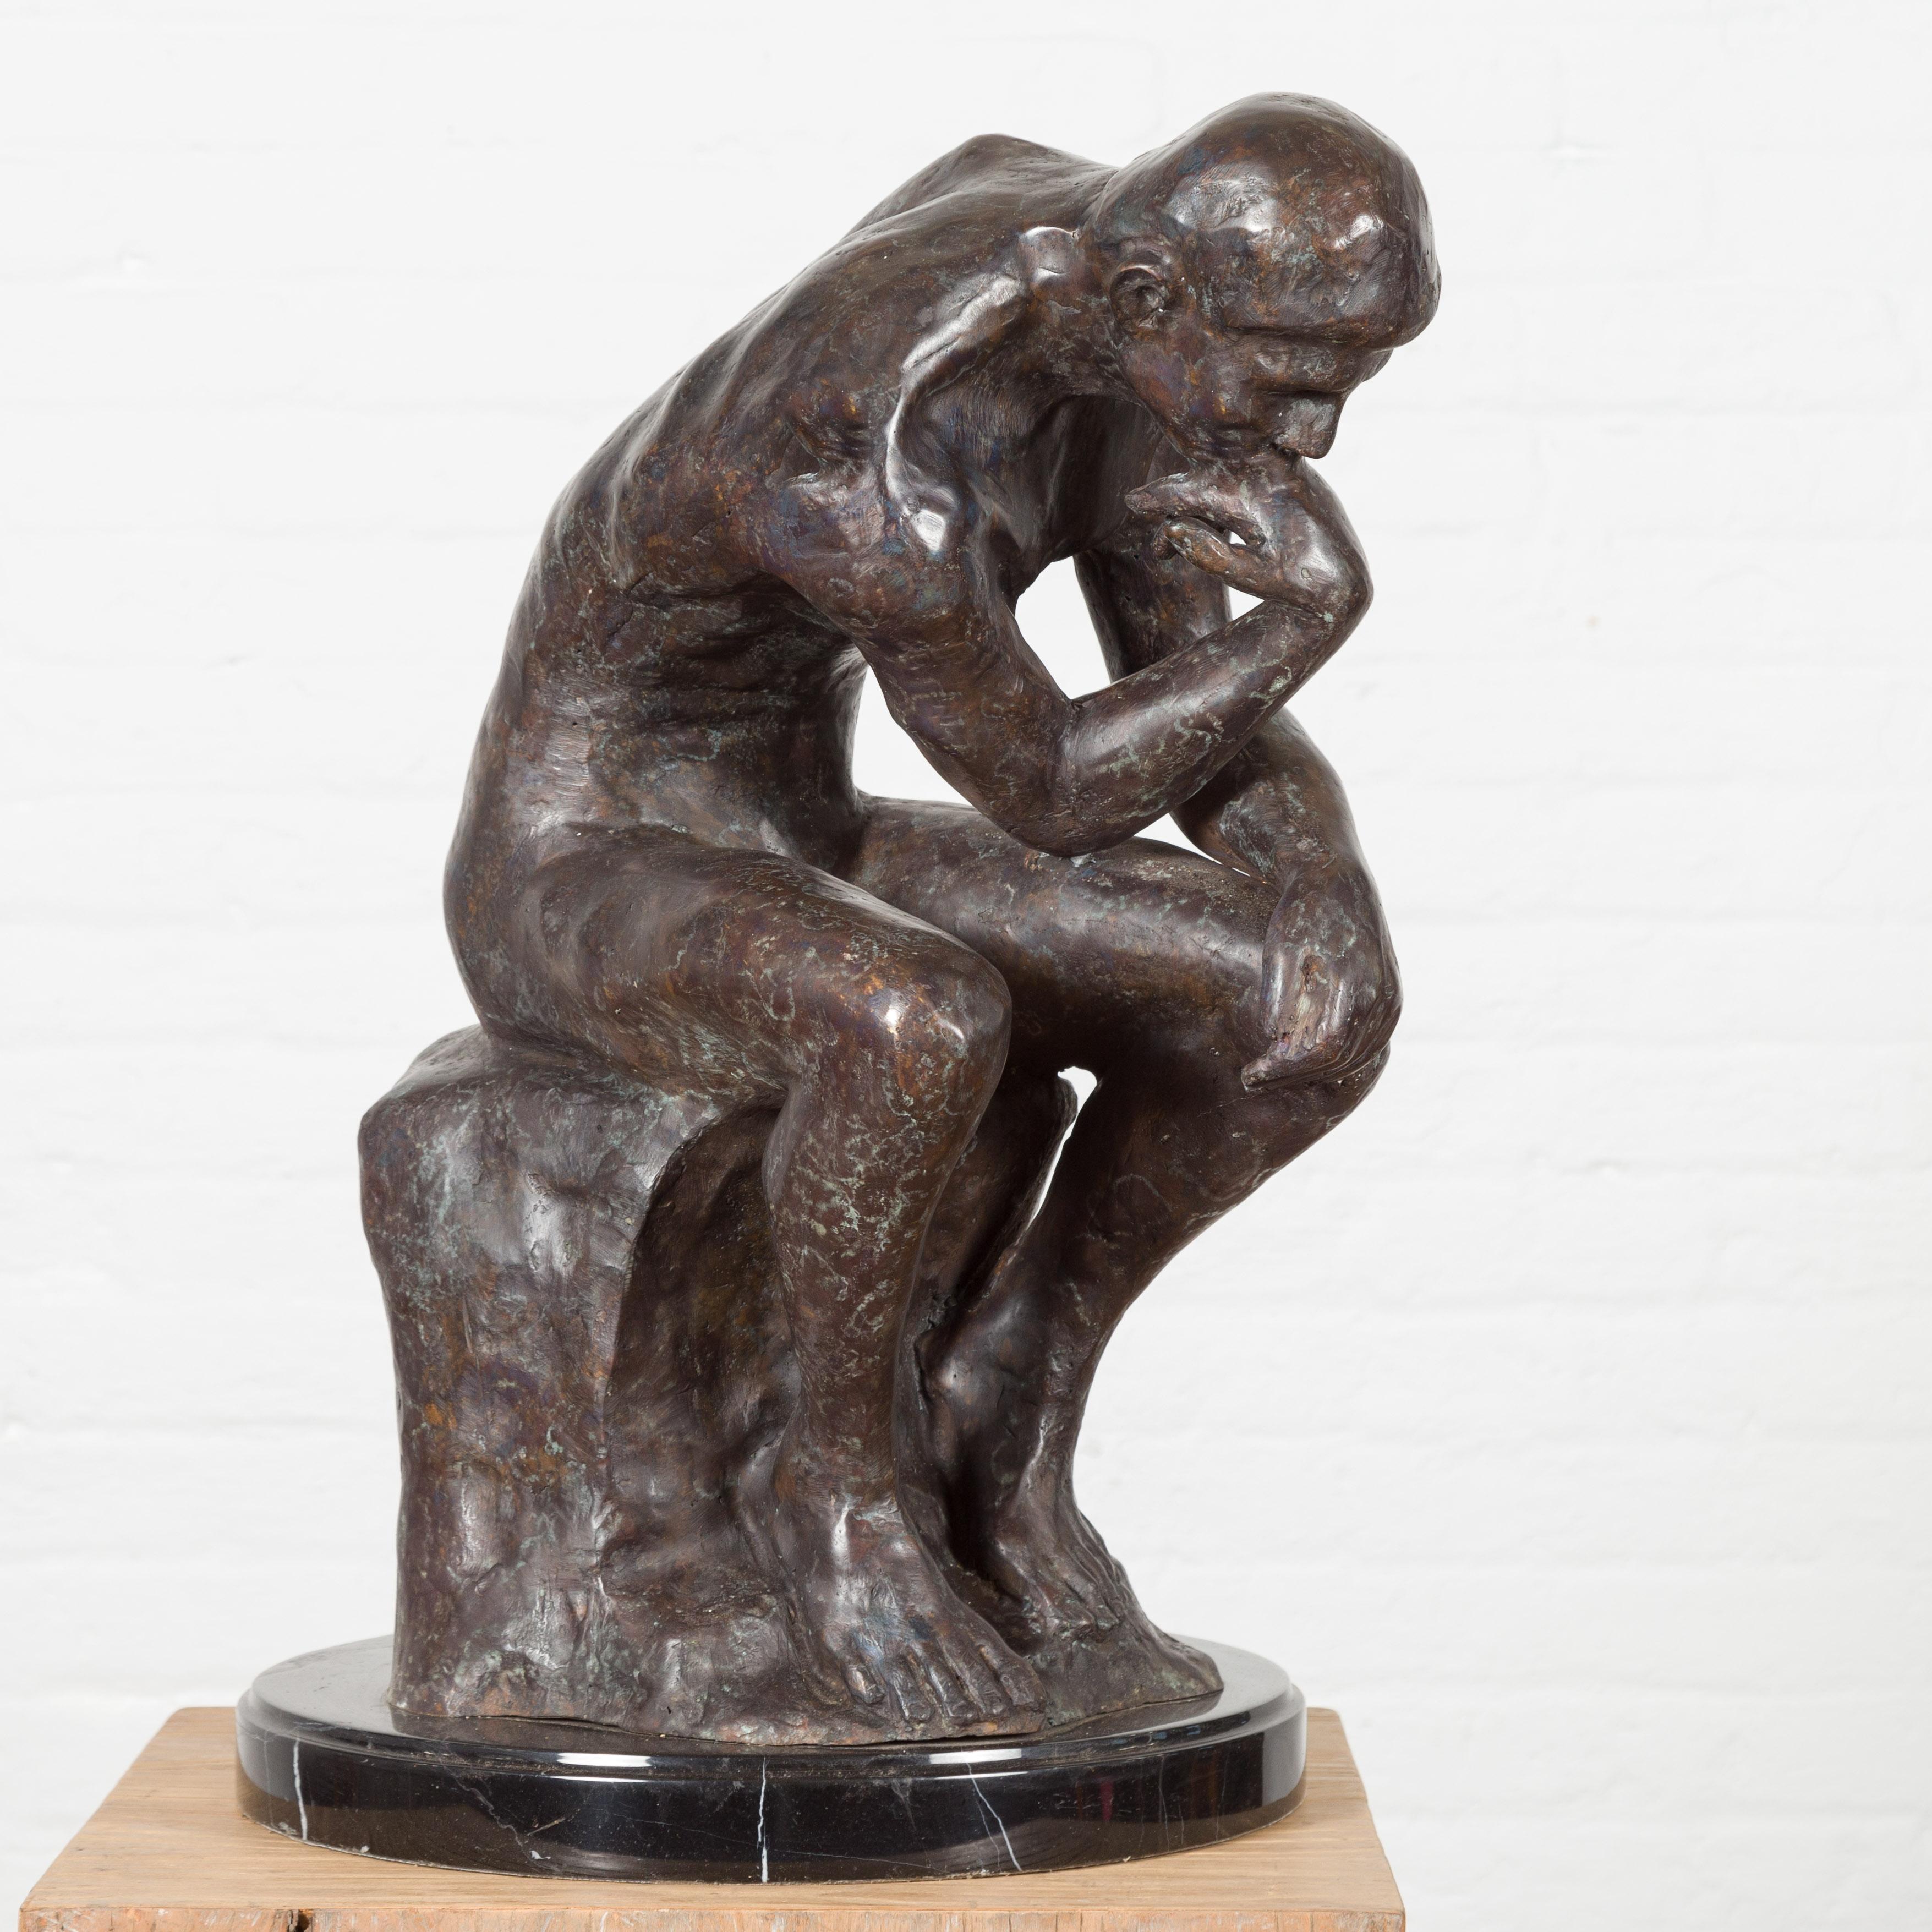 Sculpture en bronze coulée à la cire perdue, inspirée du Penseur d'Auguste Rodin, en patine sombre sur socle en marbre noir. Cet article est disponible dès maintenant et il s'agit également d'une production en cours. Créée avec la technique